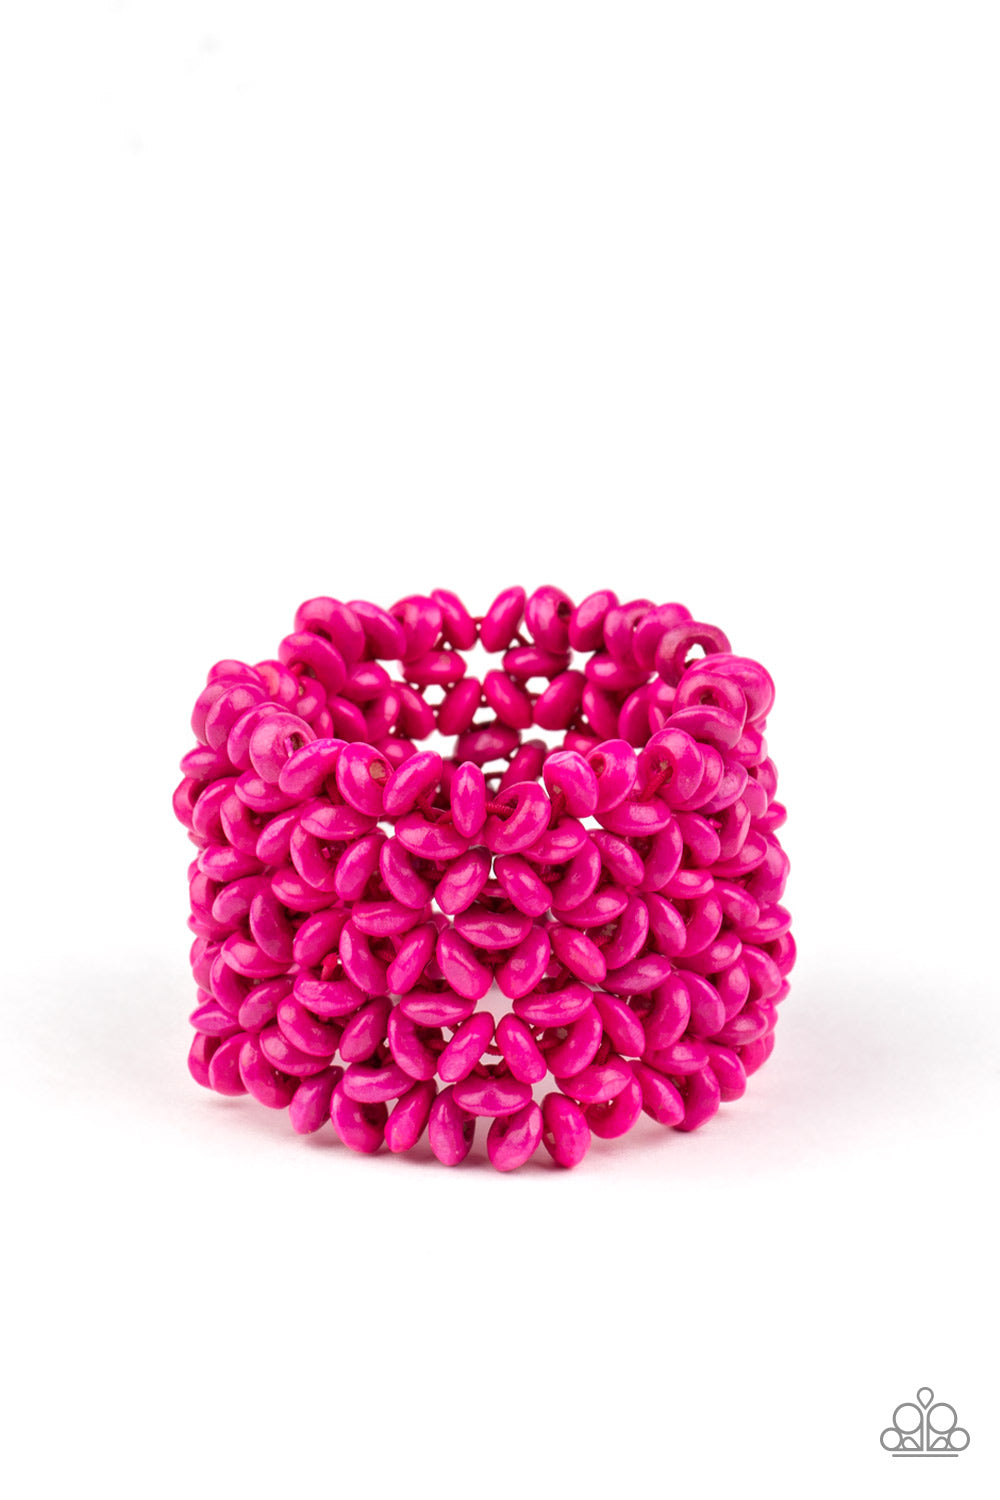 Paparazzi Tea Party Theme Pink Floral Bracelet